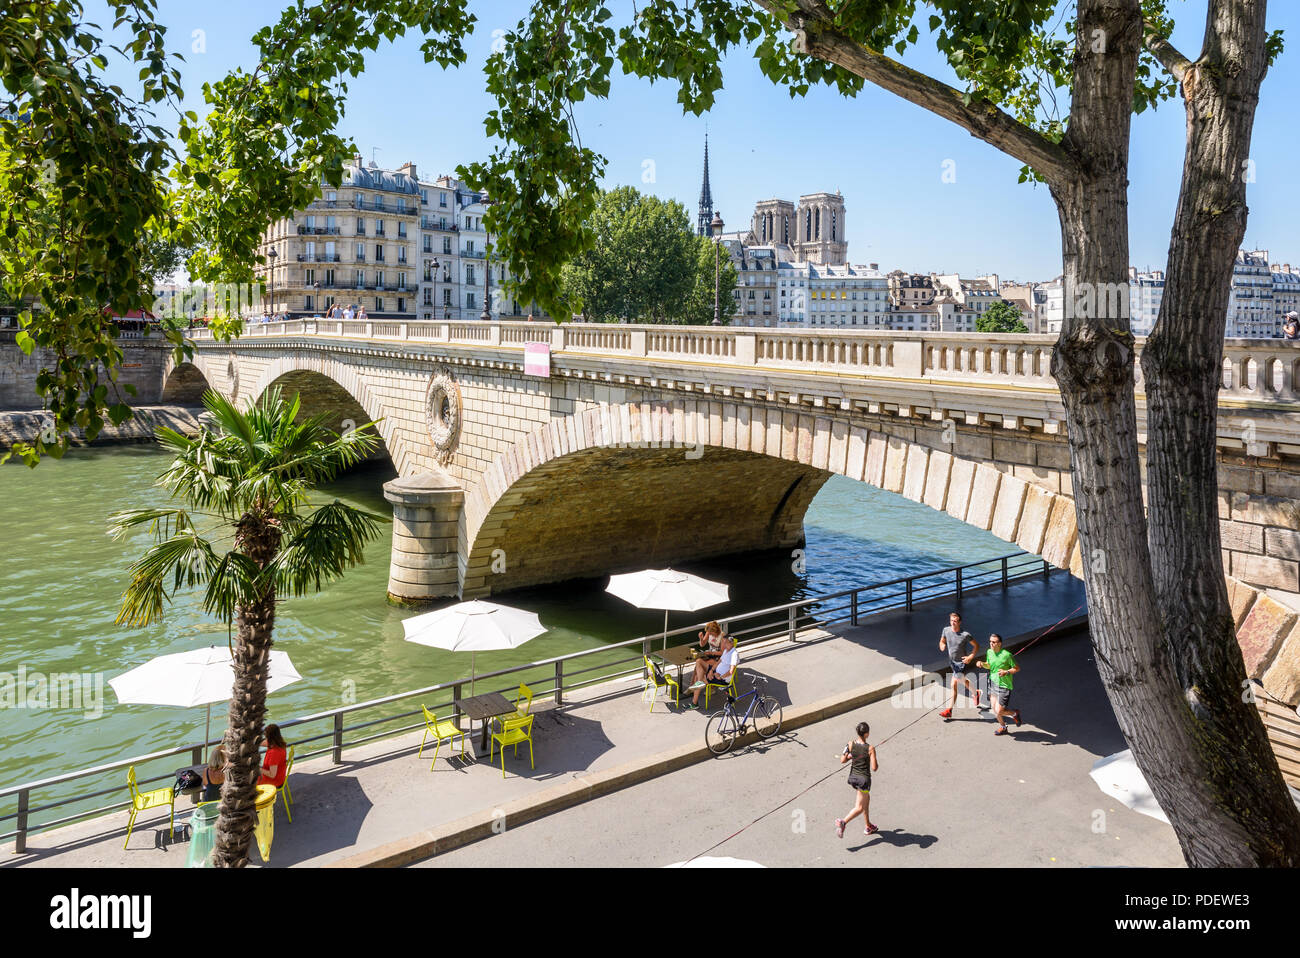 Le persone andare a fare jogging o sorseggiare un drink sulle rive della Senna durante Paris-Plage evento estivo, con la cattedrale di Notre Dame di Parigi in background. Foto Stock